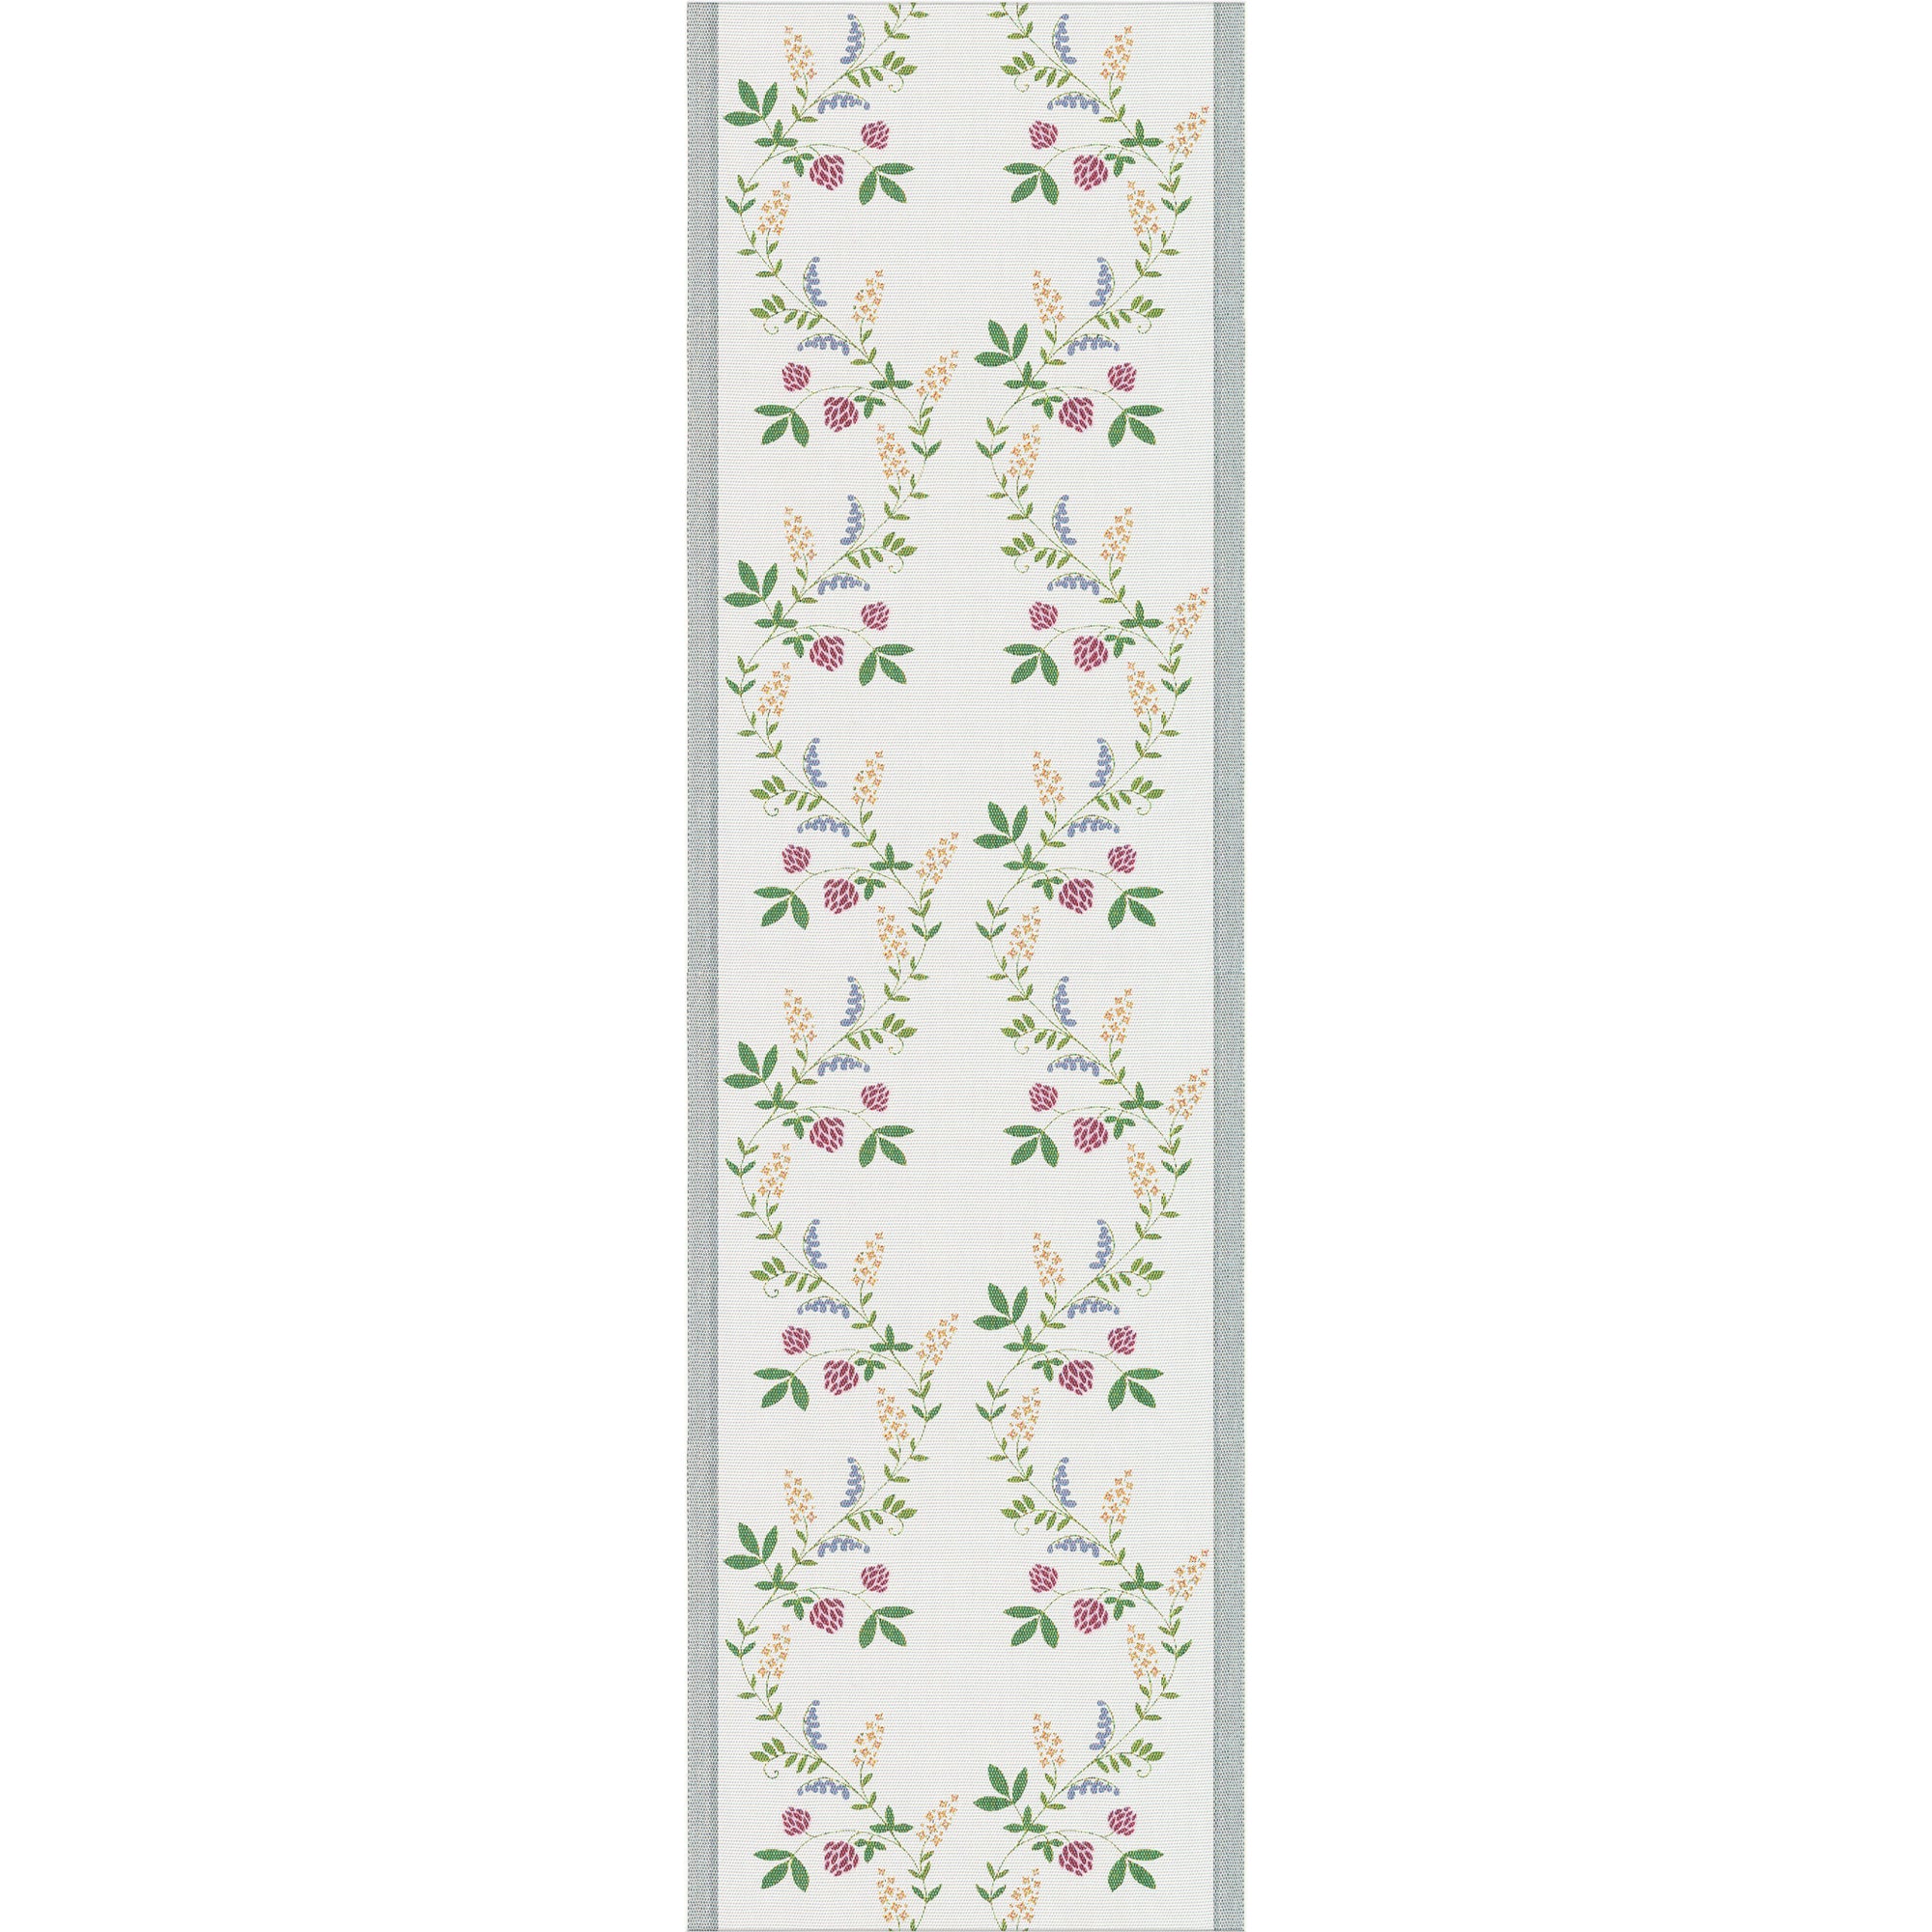 Bordslöpare Sommarblommor / Summer flowers. 35x120 cm. Ekologisk bomull